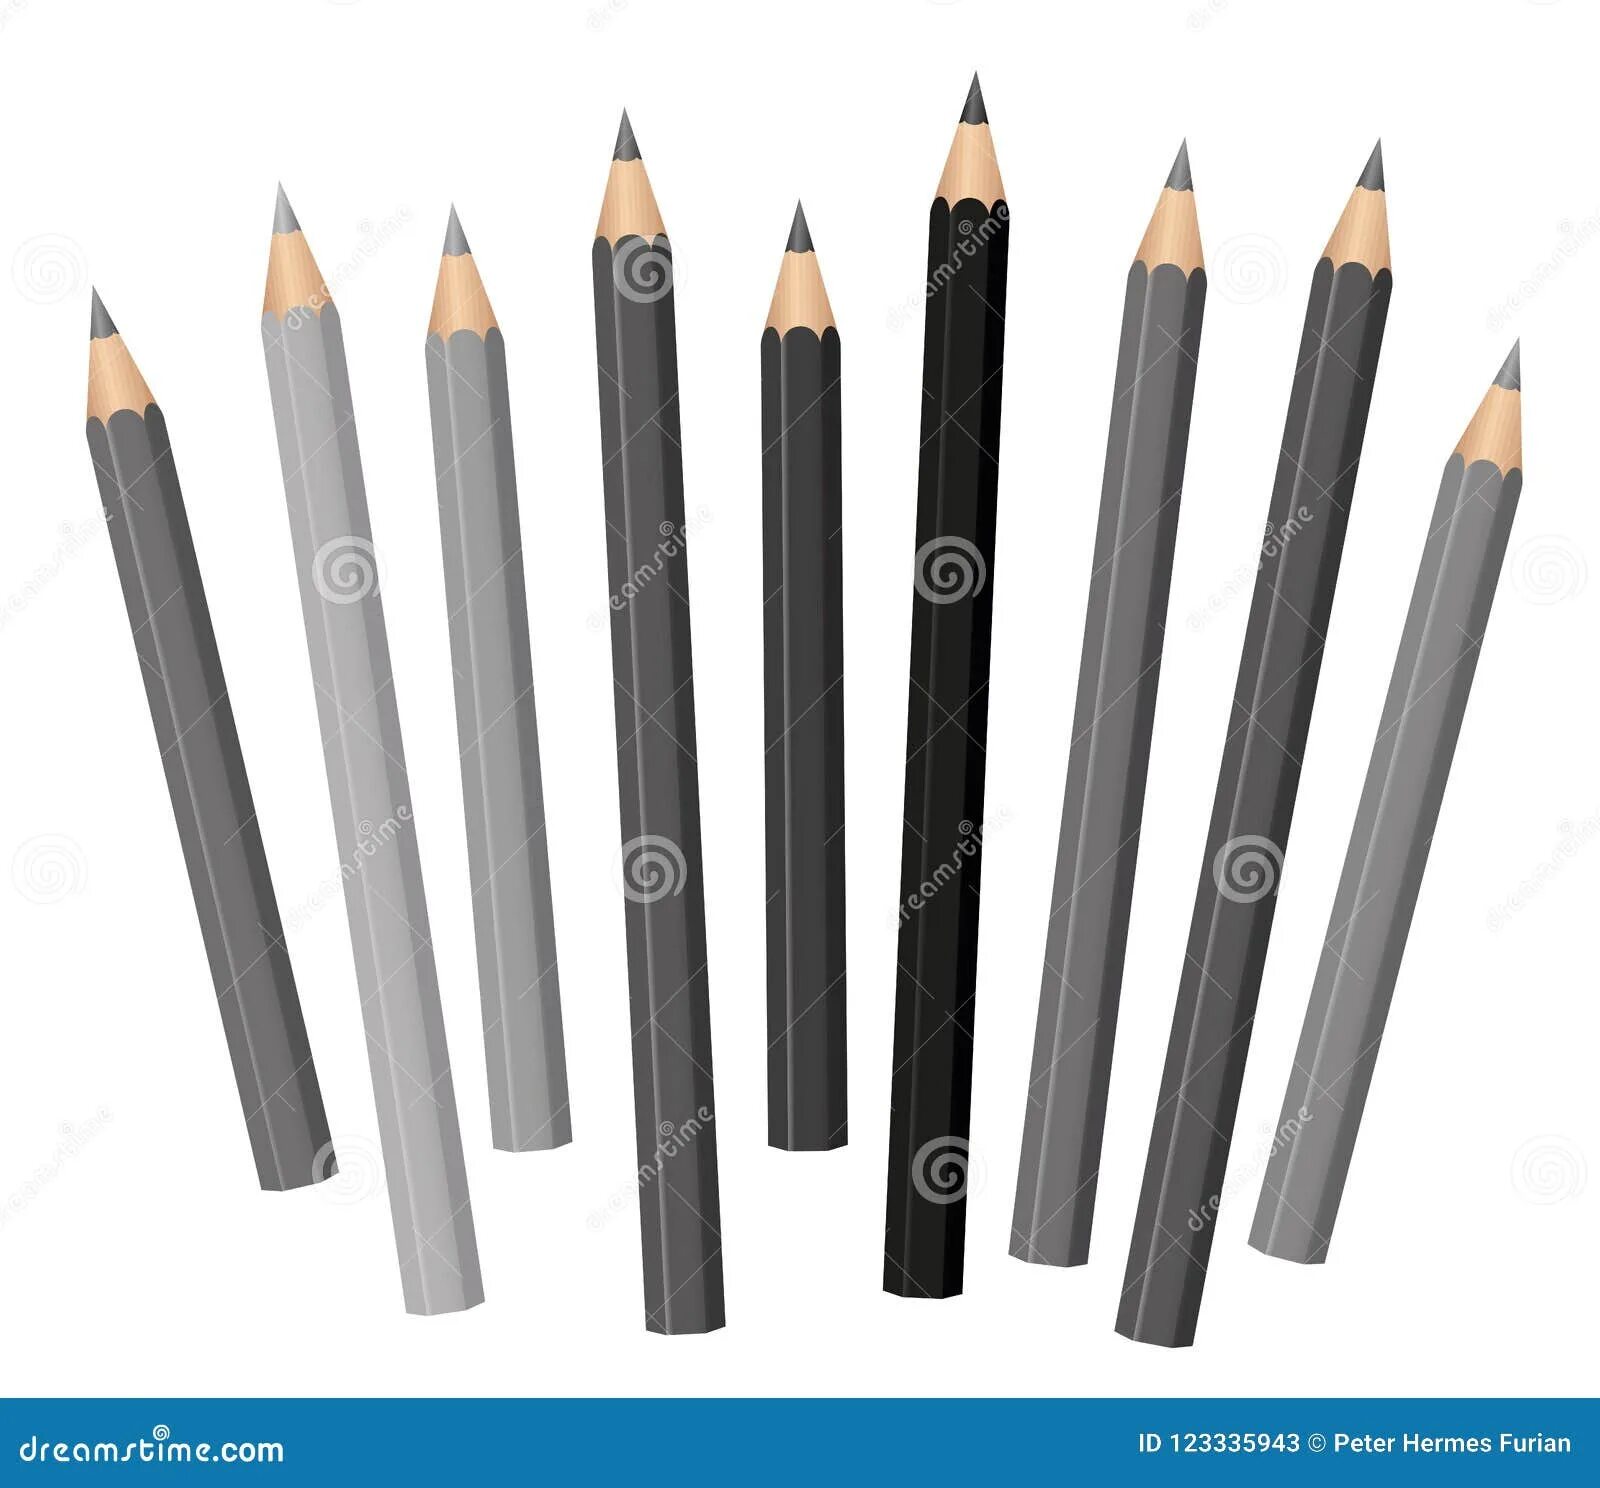 Серый карандаш. Карандаши в цвете серого. Угольные карандаши серый цвет. Карандаш серый 2022. Серый карандаш купить